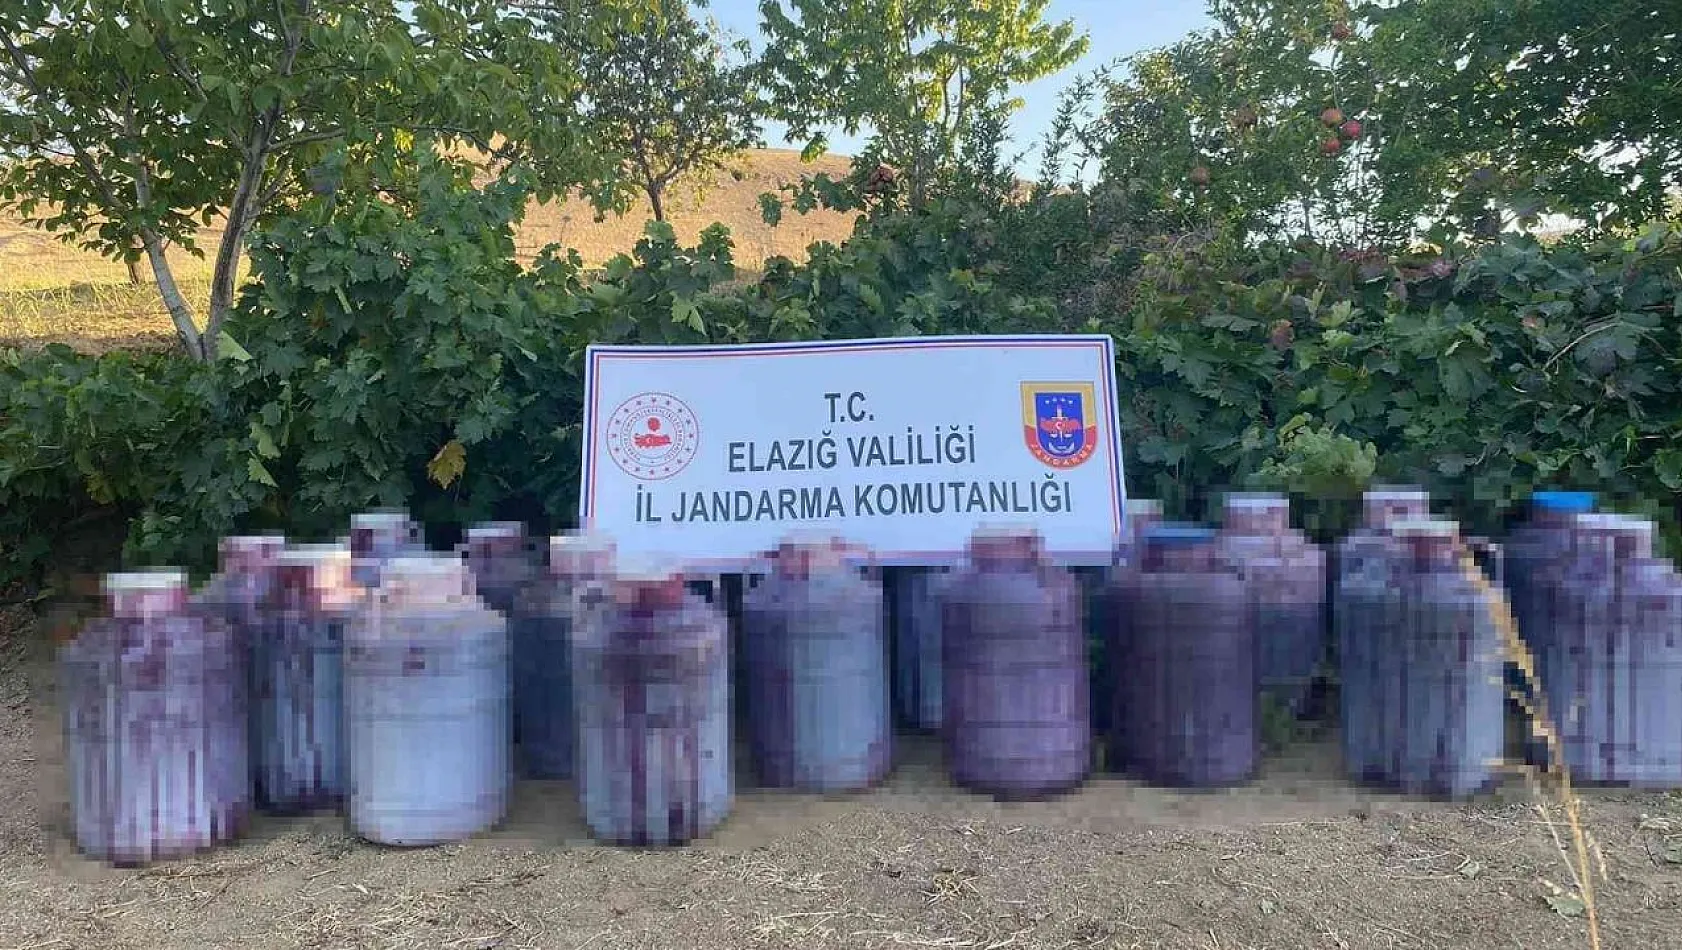 Elazığ'da 2 ton kaçak şarap ele geçirildi